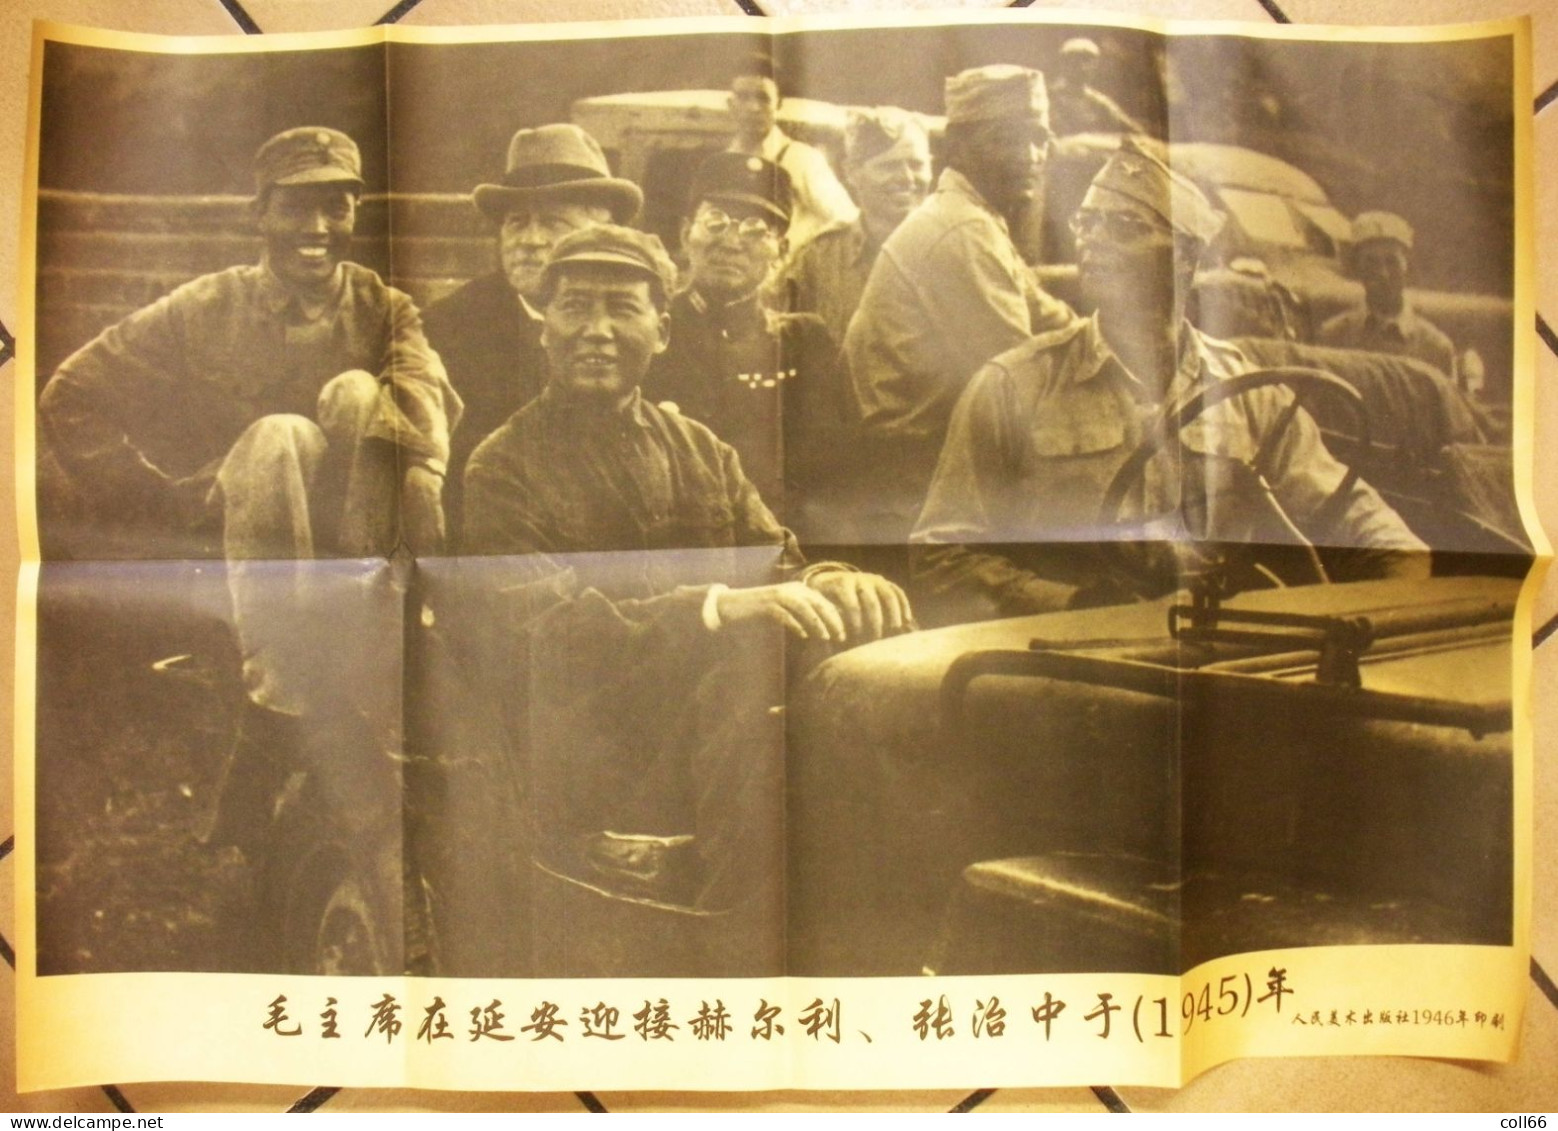 1945 Affiche Propagande Communiste Chine Jeep US Avec Mao & Dignitaires Américains & Chinois 52x75 Cm Port Franco - Plakate